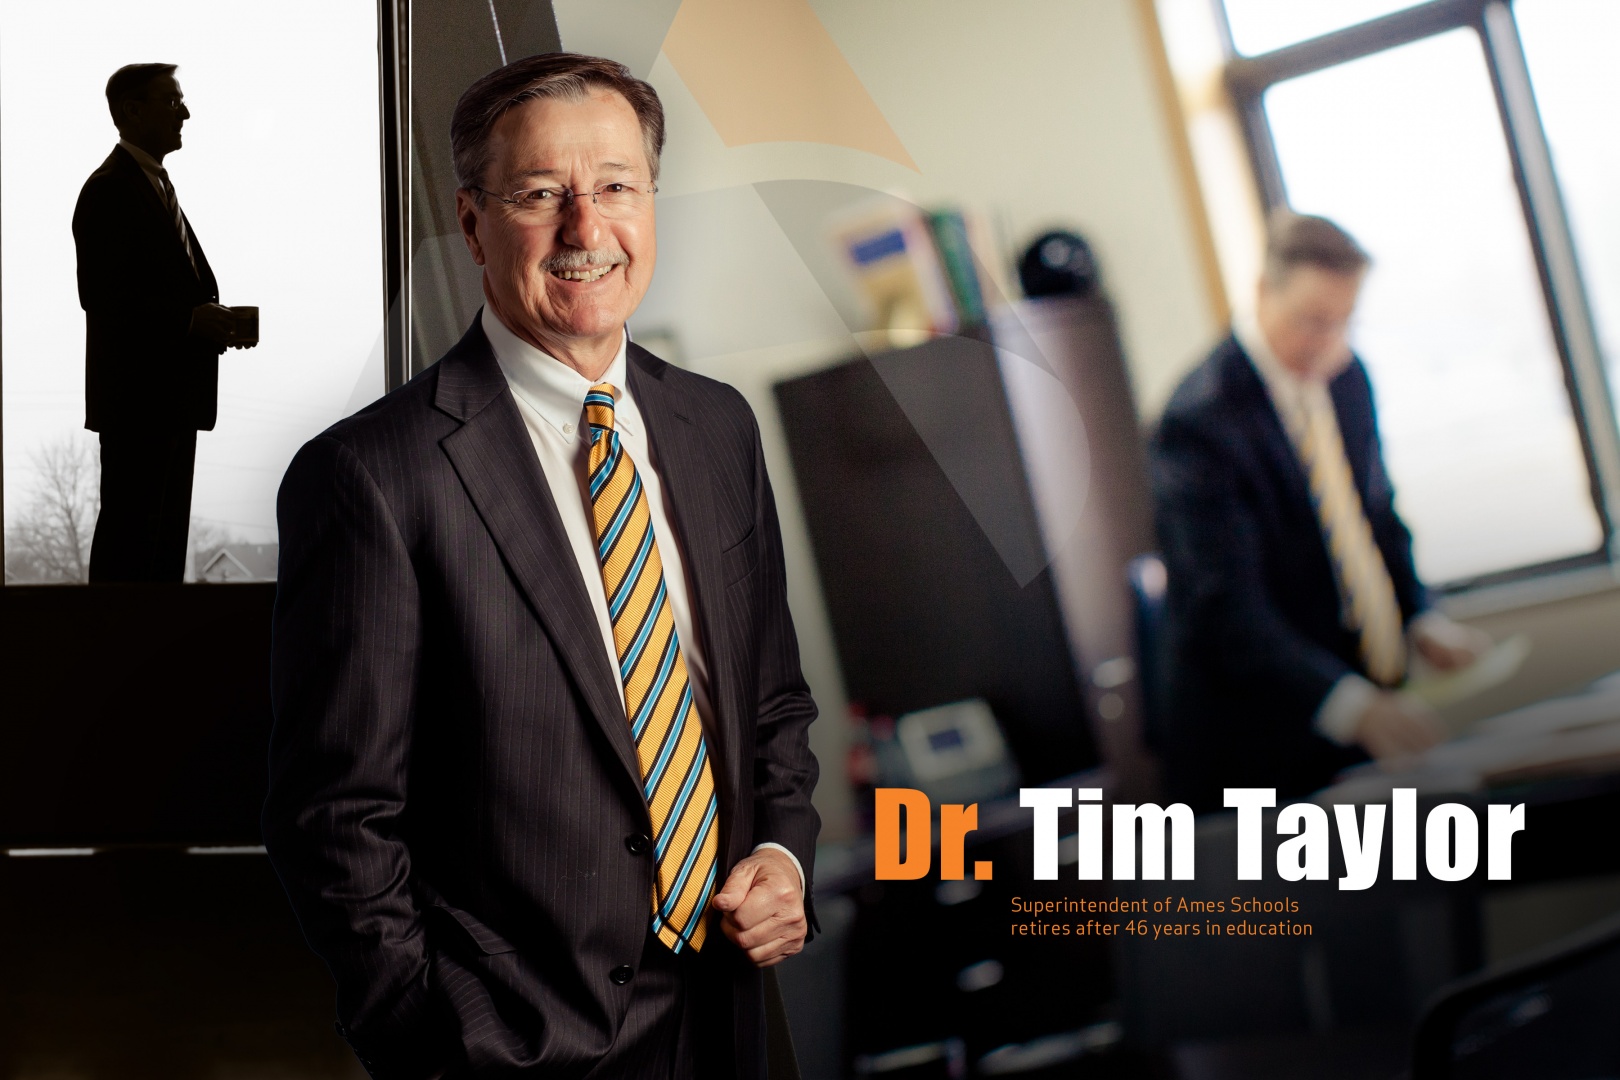 Dr. Tim Taylor